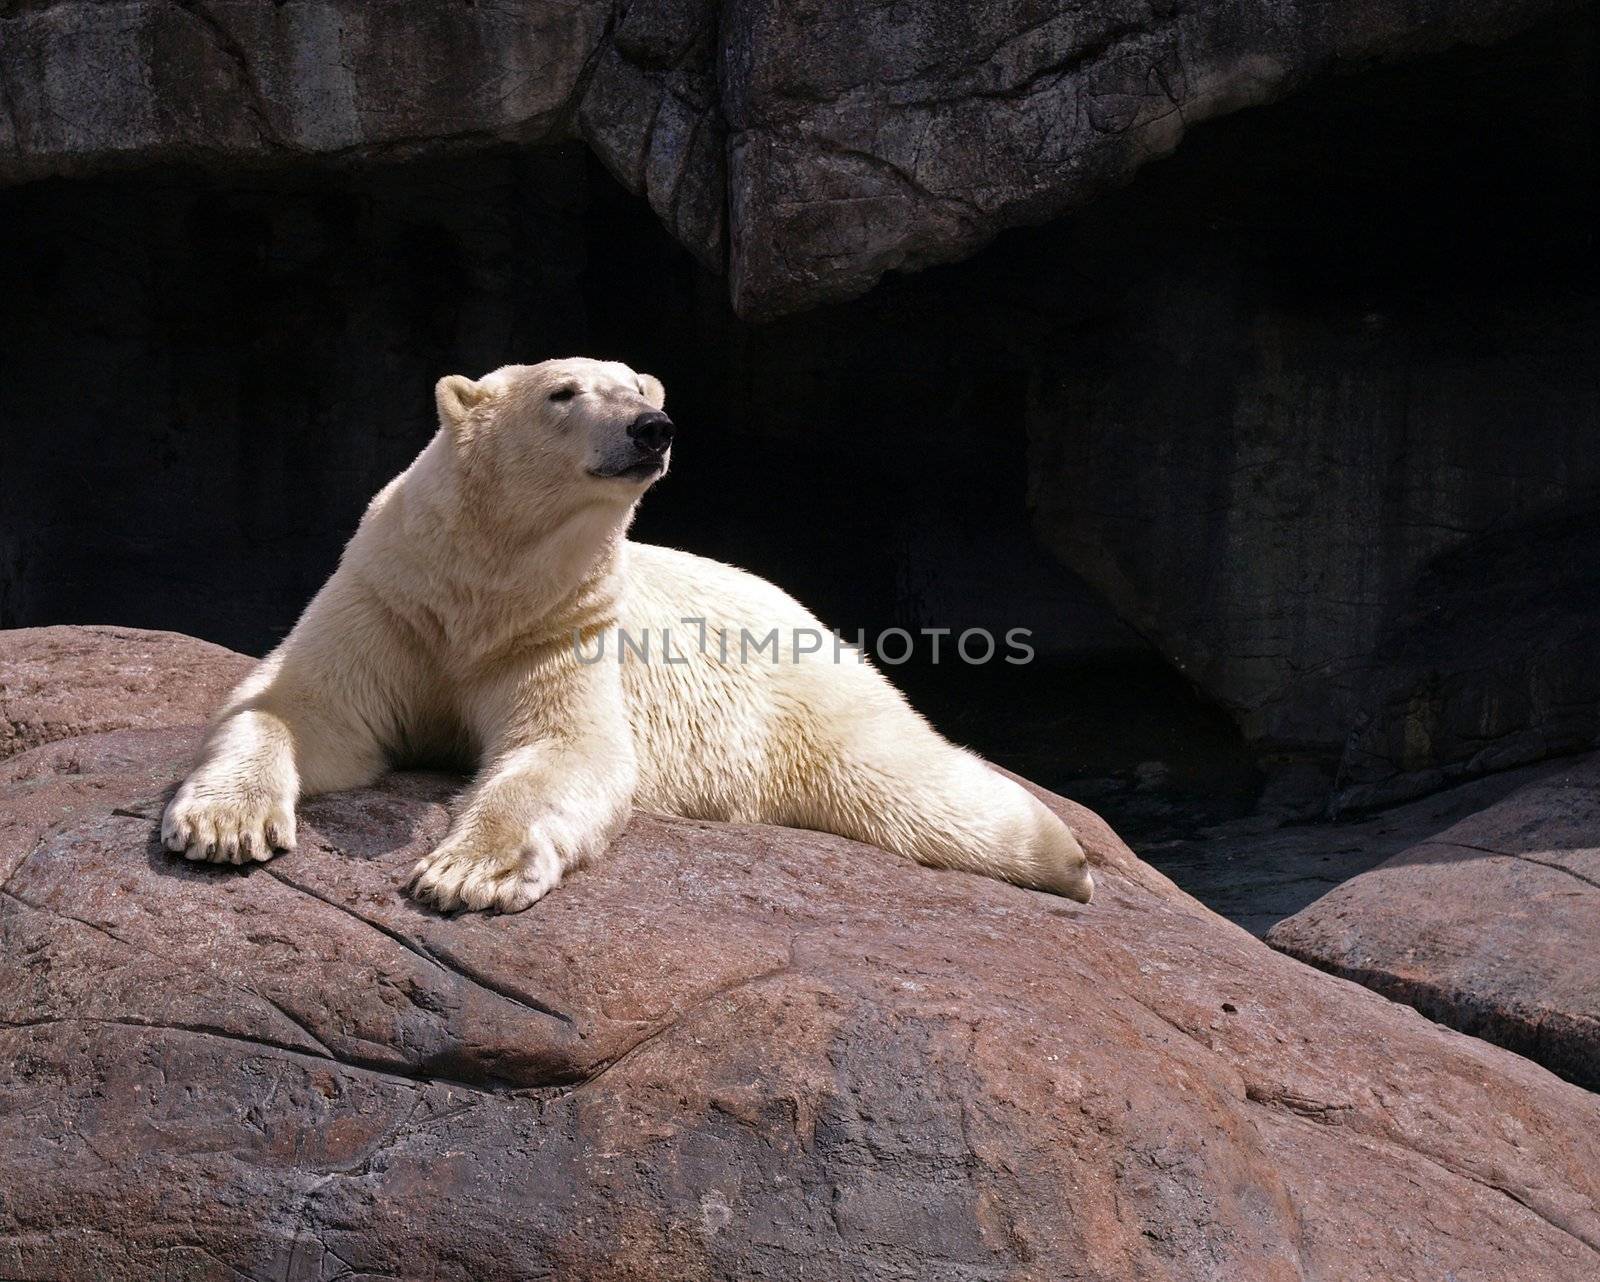 A mildly wet polar bear by Ric510